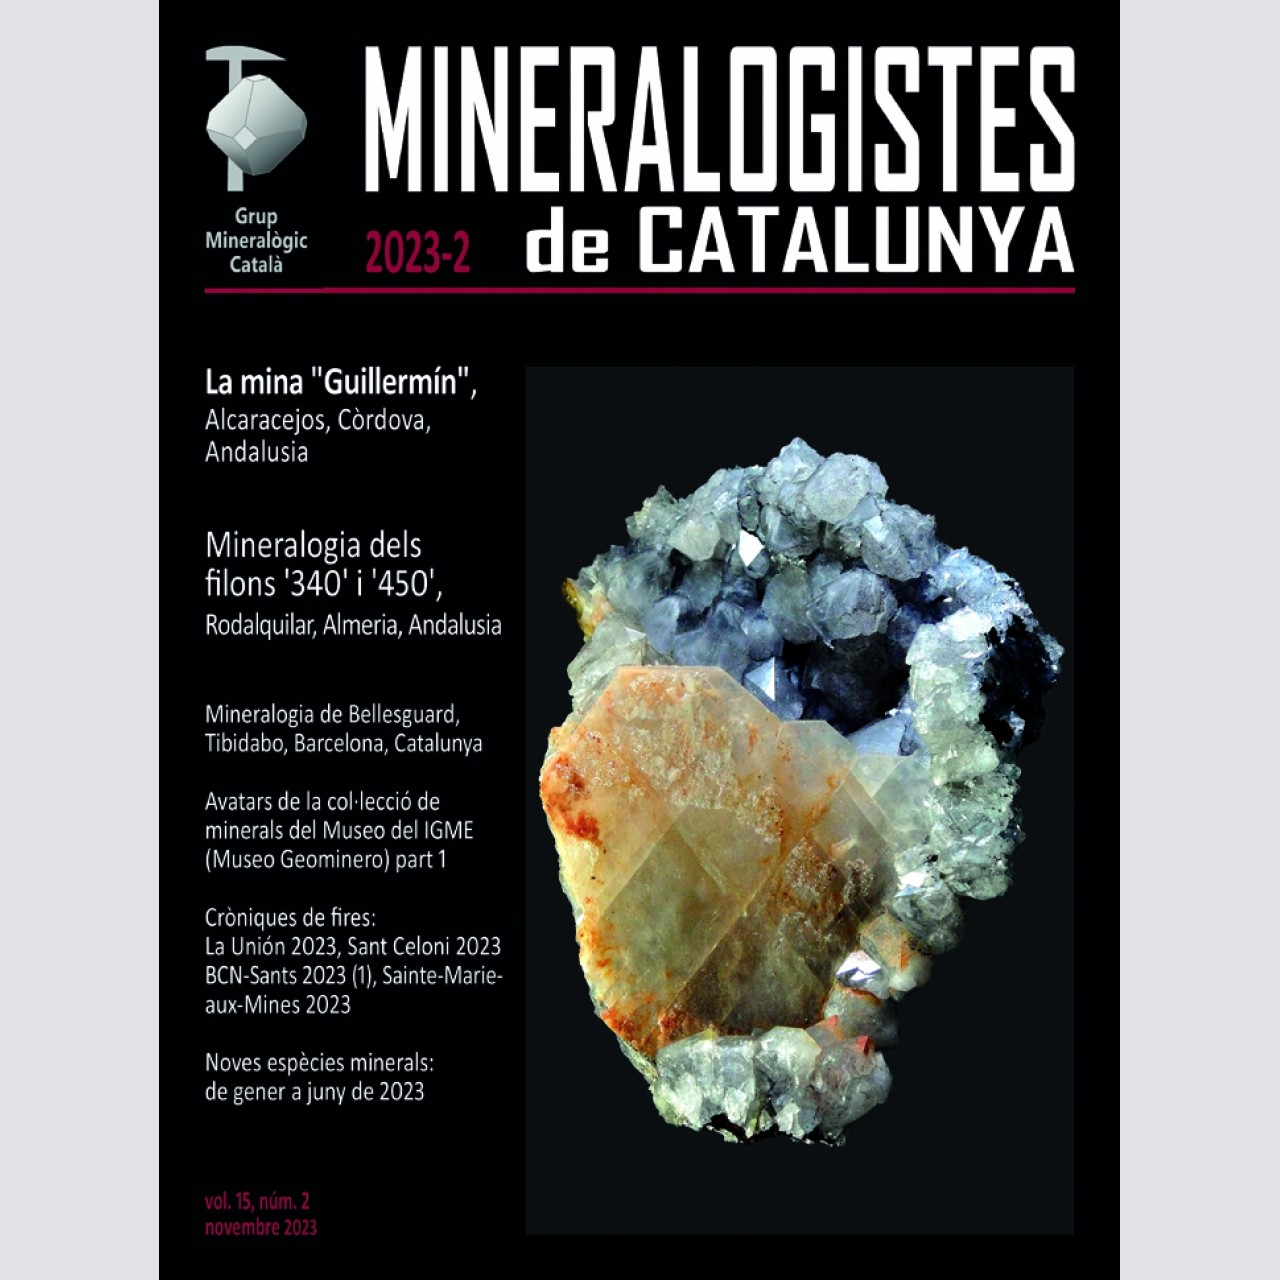 <em>Mineralogistes de Catalunya</em> (2023-2)